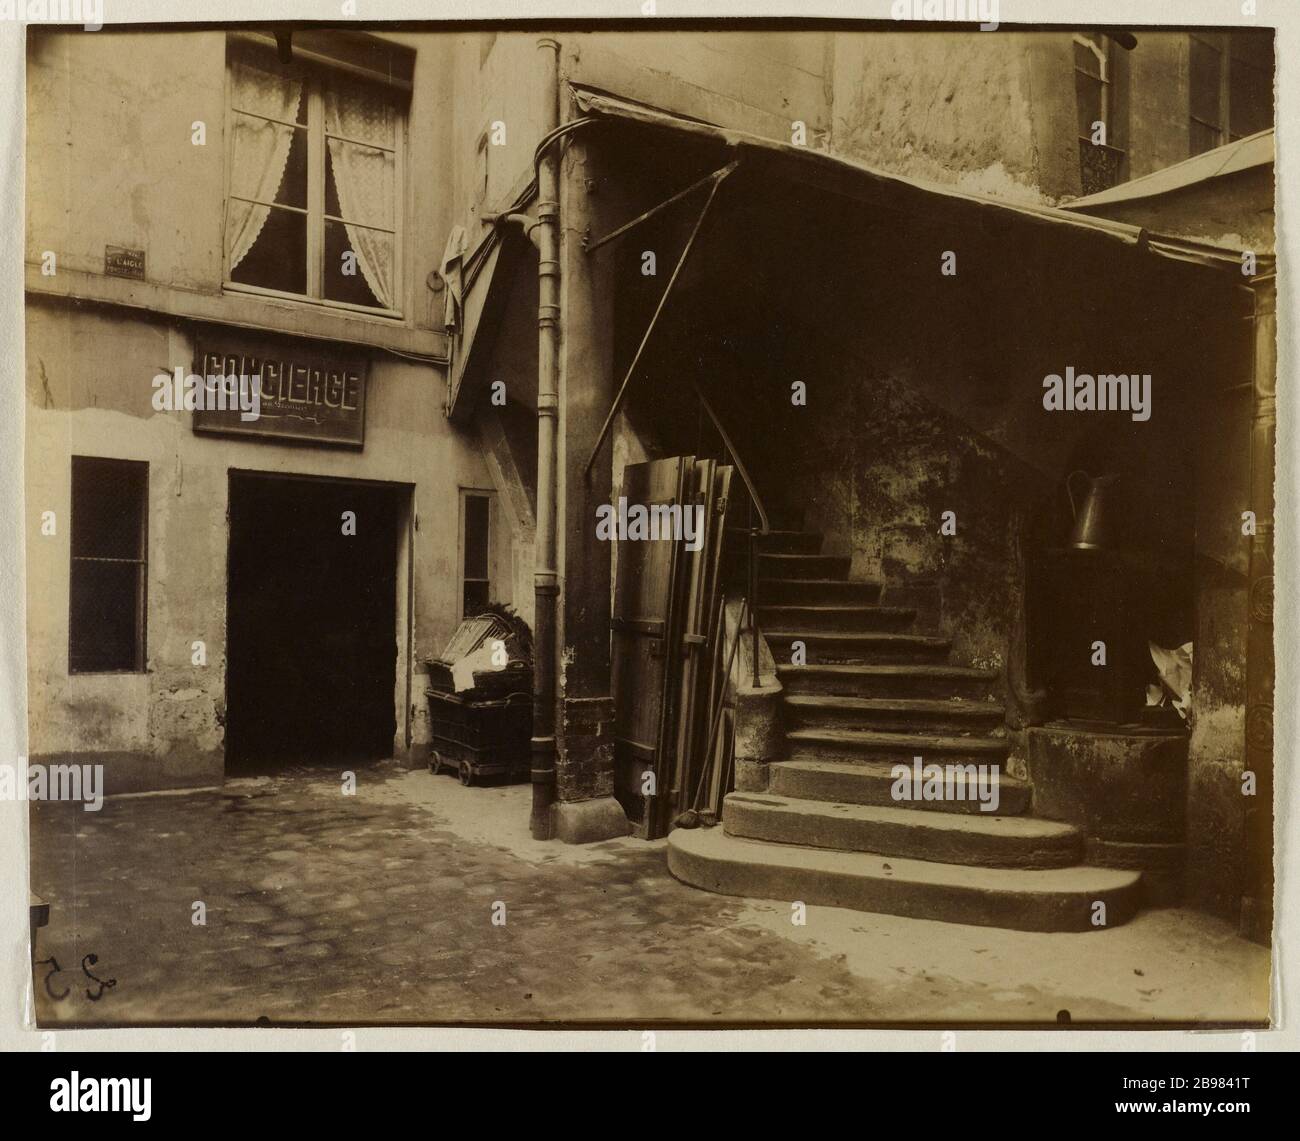 COURT OF 10 SAUVAL STREET, 1ST DISTRICT, PARIS Cour, 10 de la rue Sauval, Paris (Ier arr.), 1908. Photographie d'Eugène Atget (1857-1927). Paris, musée Carnavalet. Stock Photo